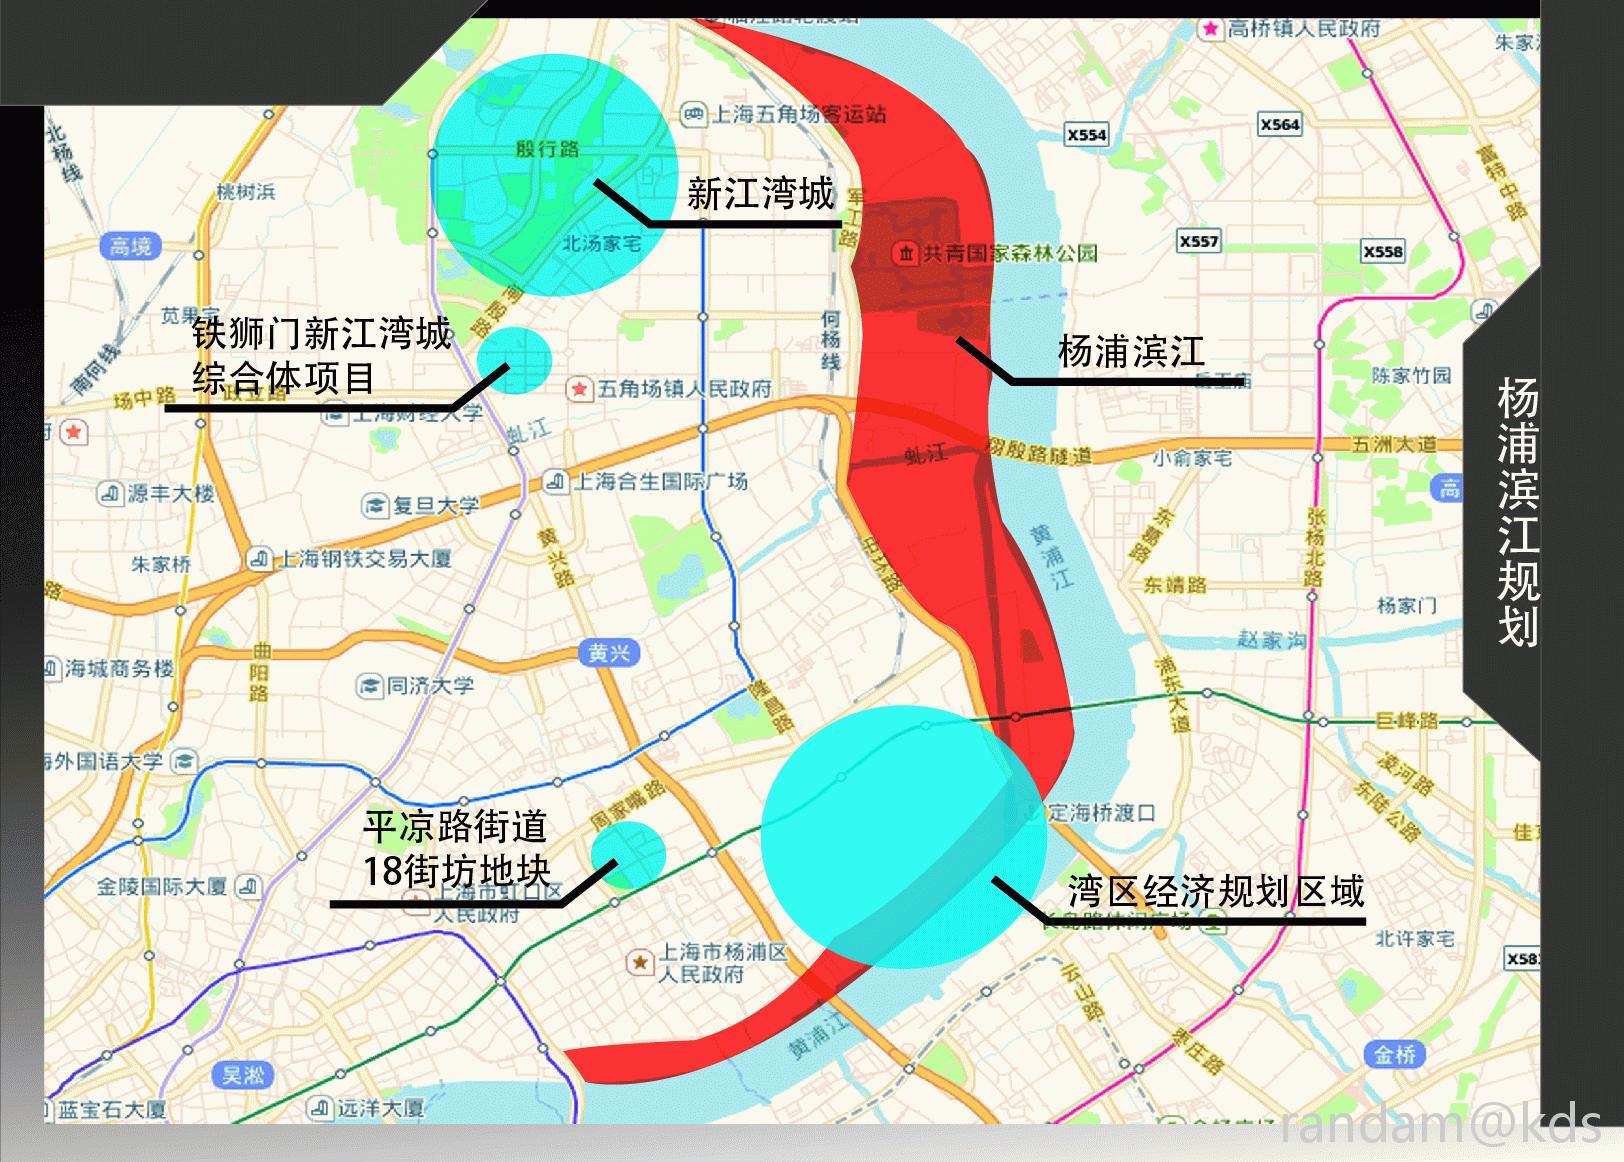 新江湾尚景园地图图片